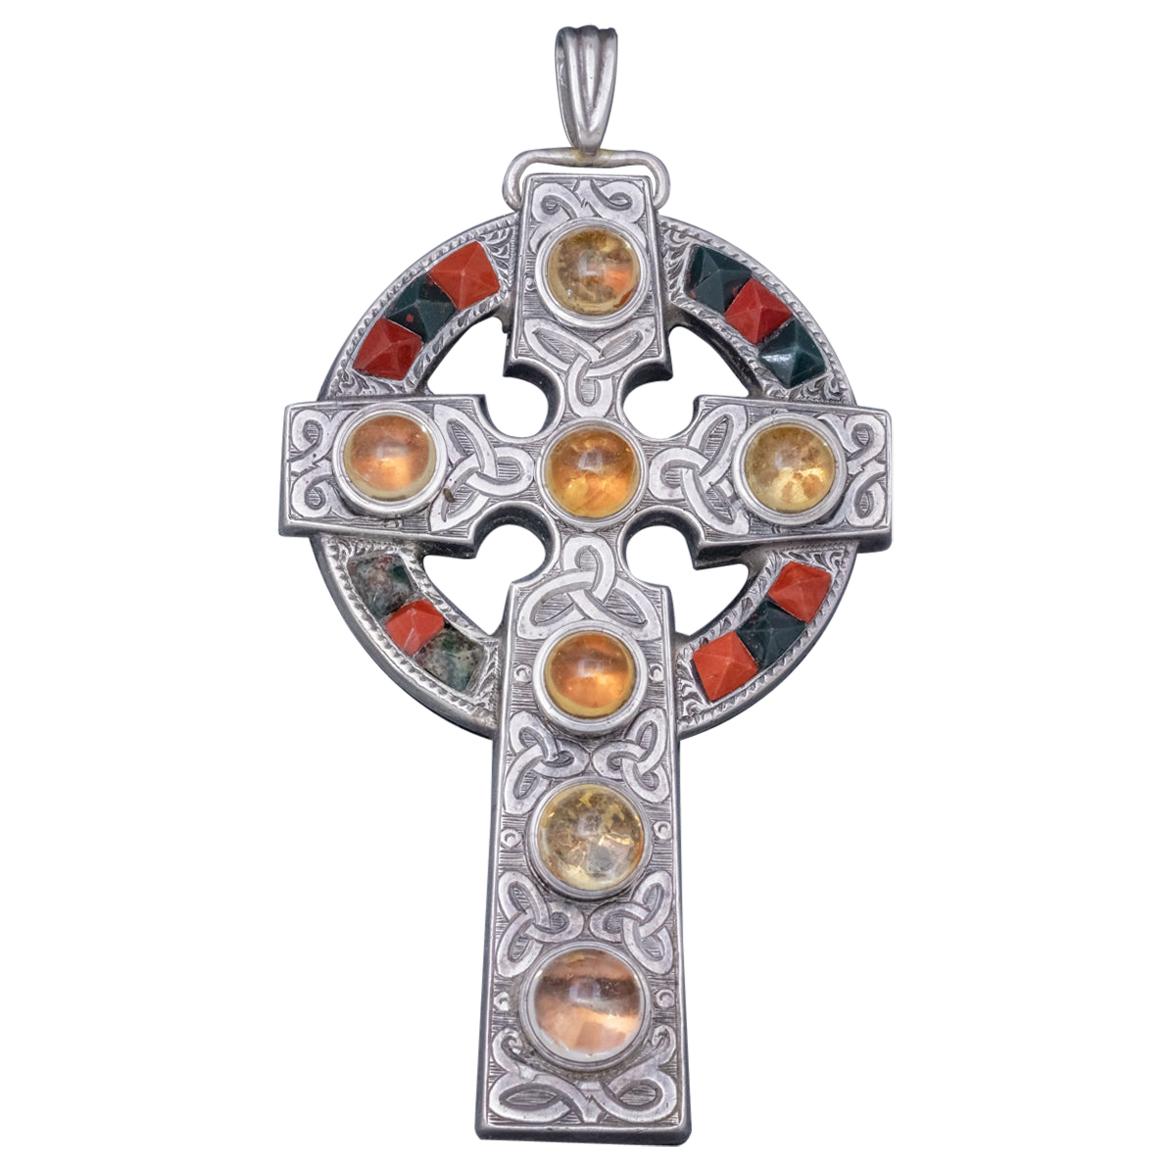 Antique Celtic Cross Pendant Silver Cairngorm Victorian, circa 1860 For Sale